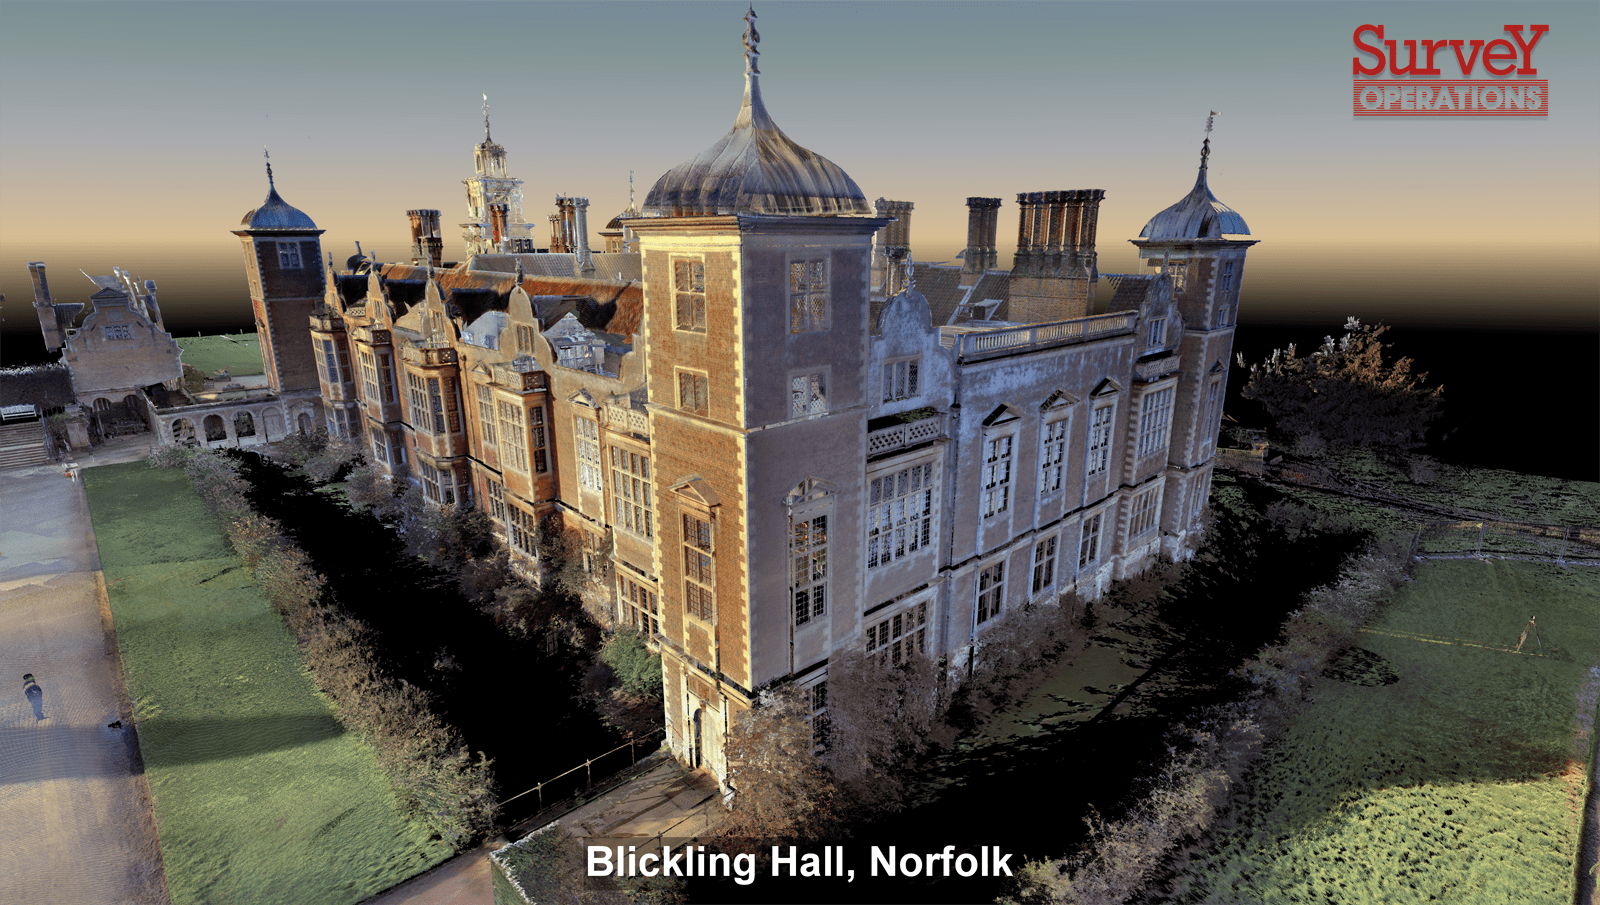 Blickling Hall surveying